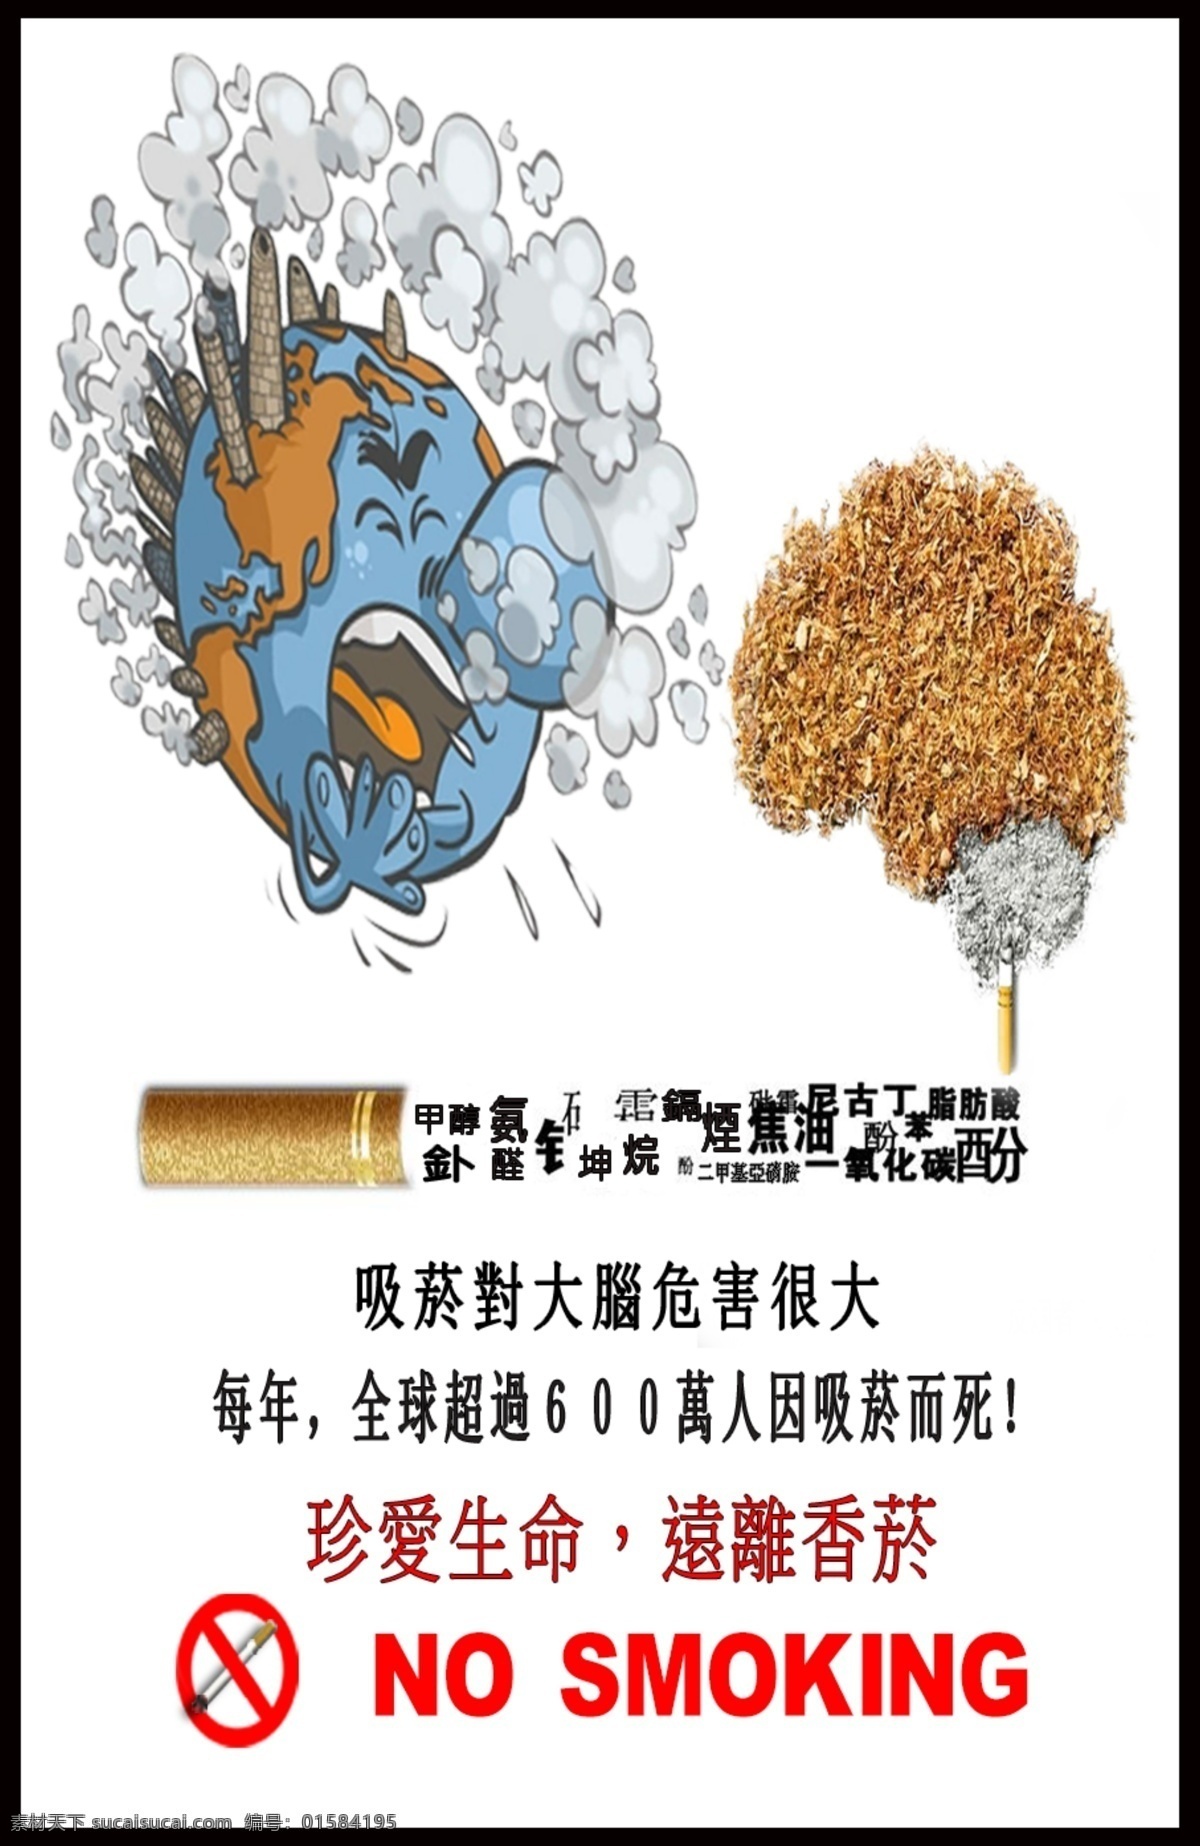 烟 害 宣导 地球 咳嗽 抽烟 焦油 尼古丁 烟害宣导 地球咳嗽 低质 量 妈 不 觉得 火车 除了 讲述 更 间接 提到 二氧化碳 污染